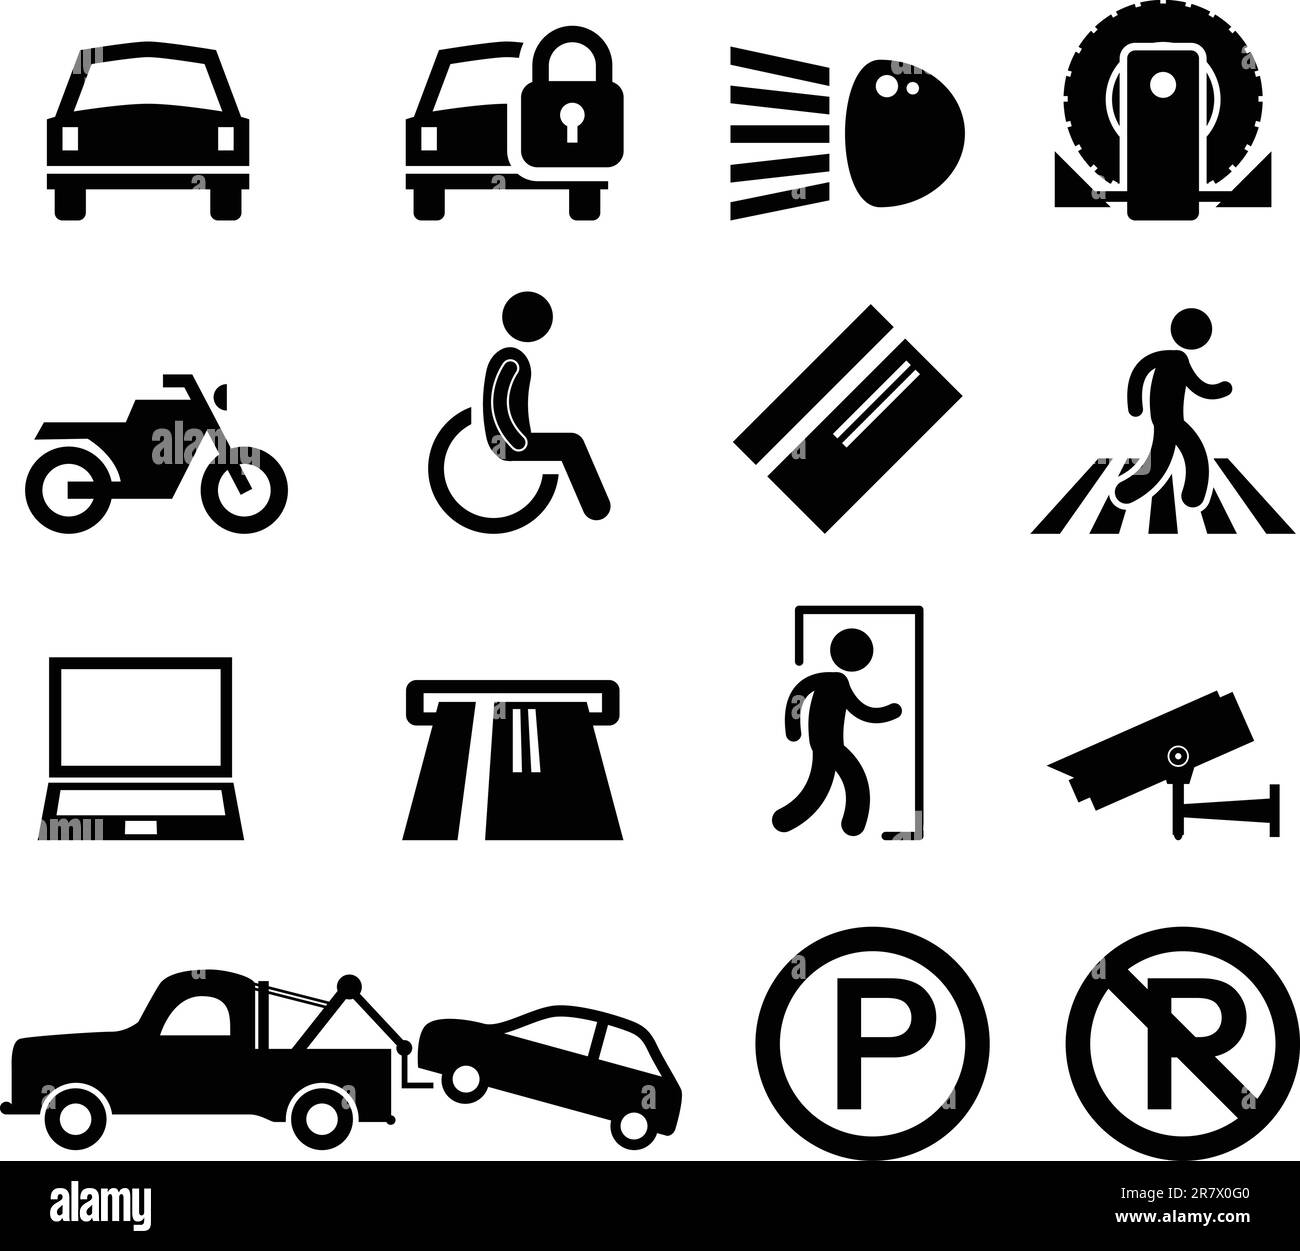 Eine Reihe von Erinnerungs- und Informationssymbolen für den Parkplatz. Stock Vektor